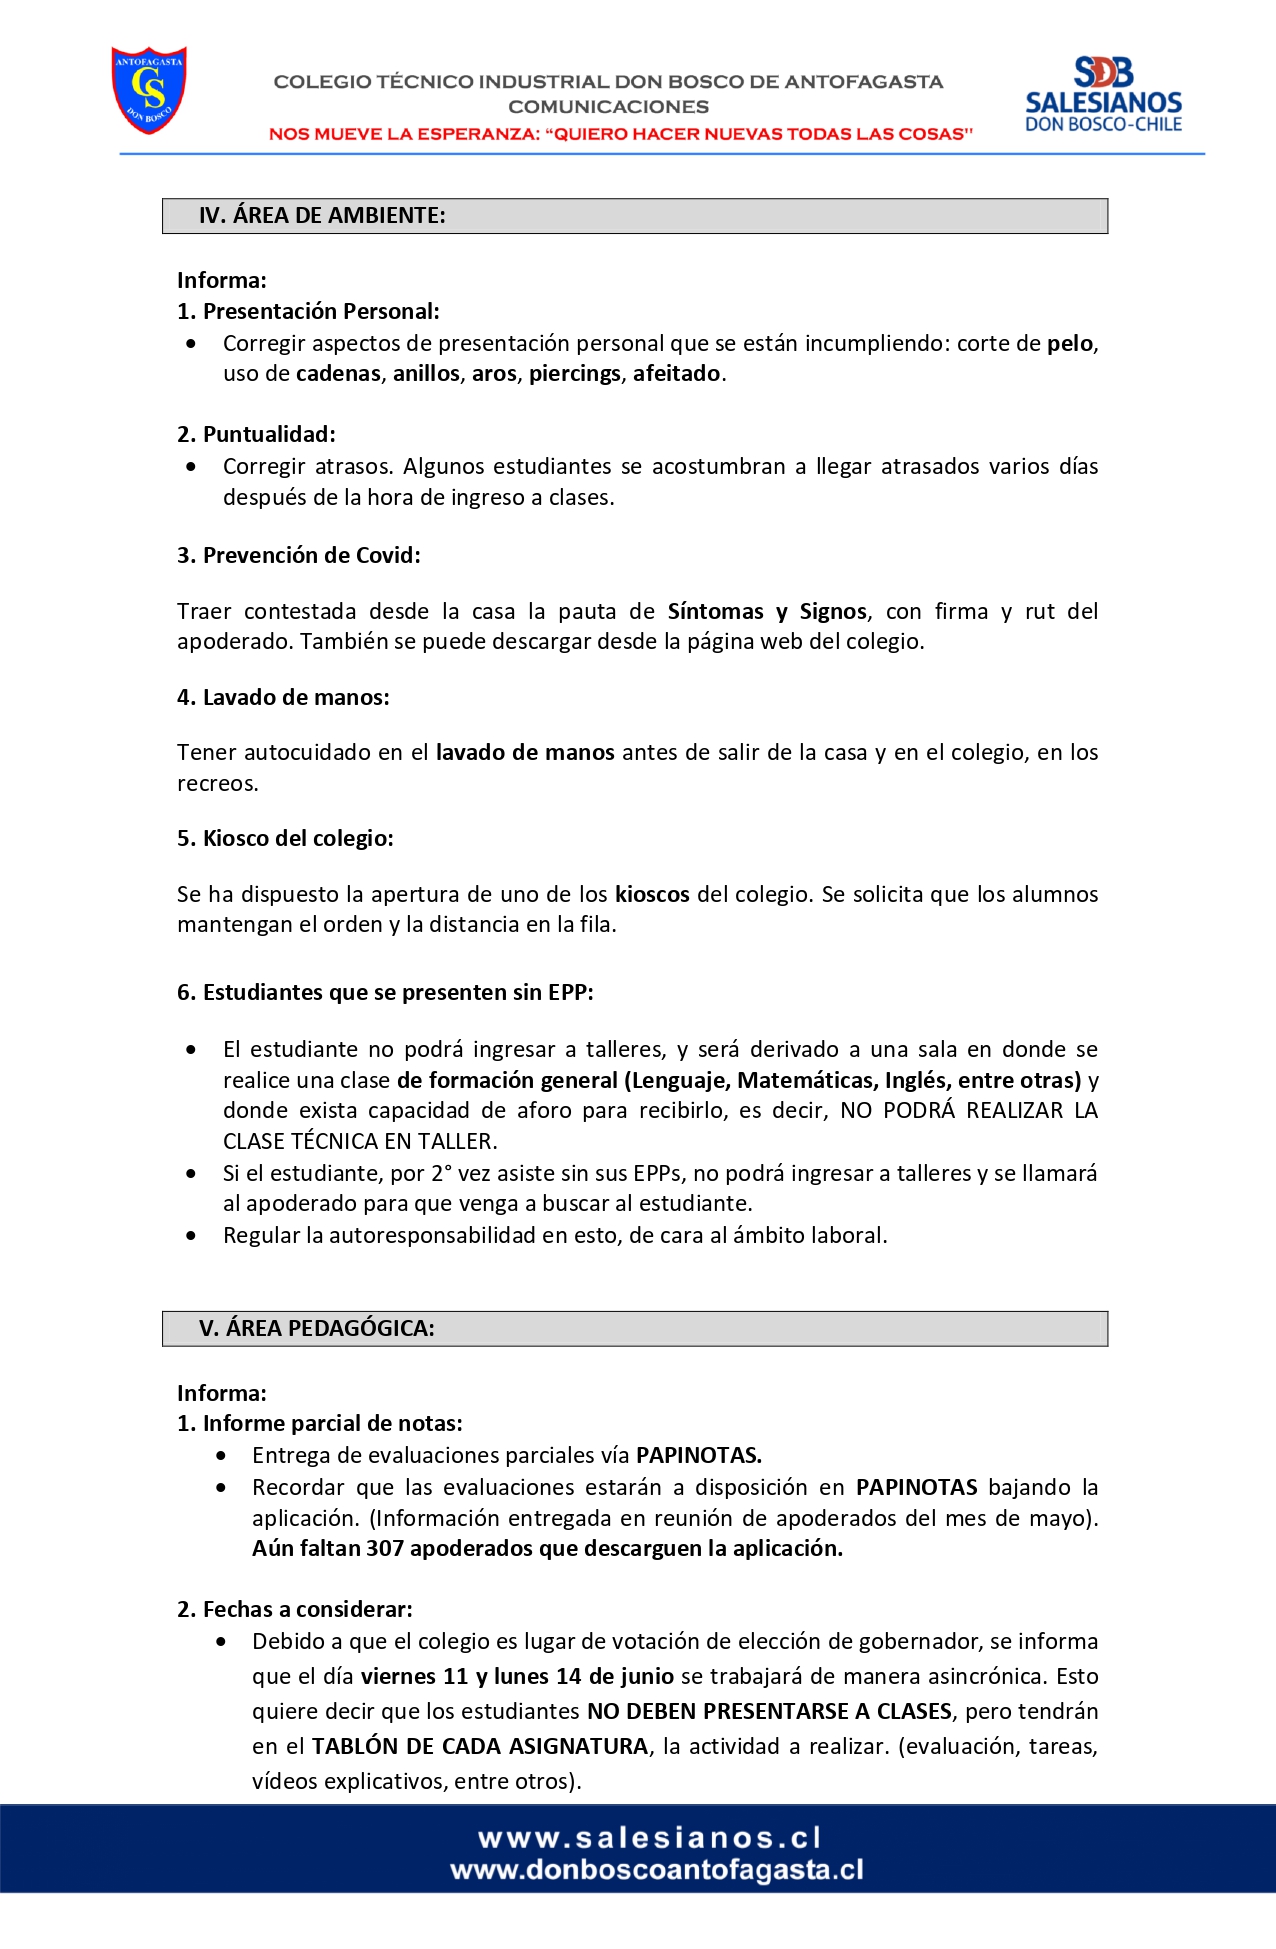 CIRCULAR Nº12 INFORMA REUNIÓN DE PADRES Y APODERADOS 10 DE JUNIO DE 2021 pages to jpg 0003